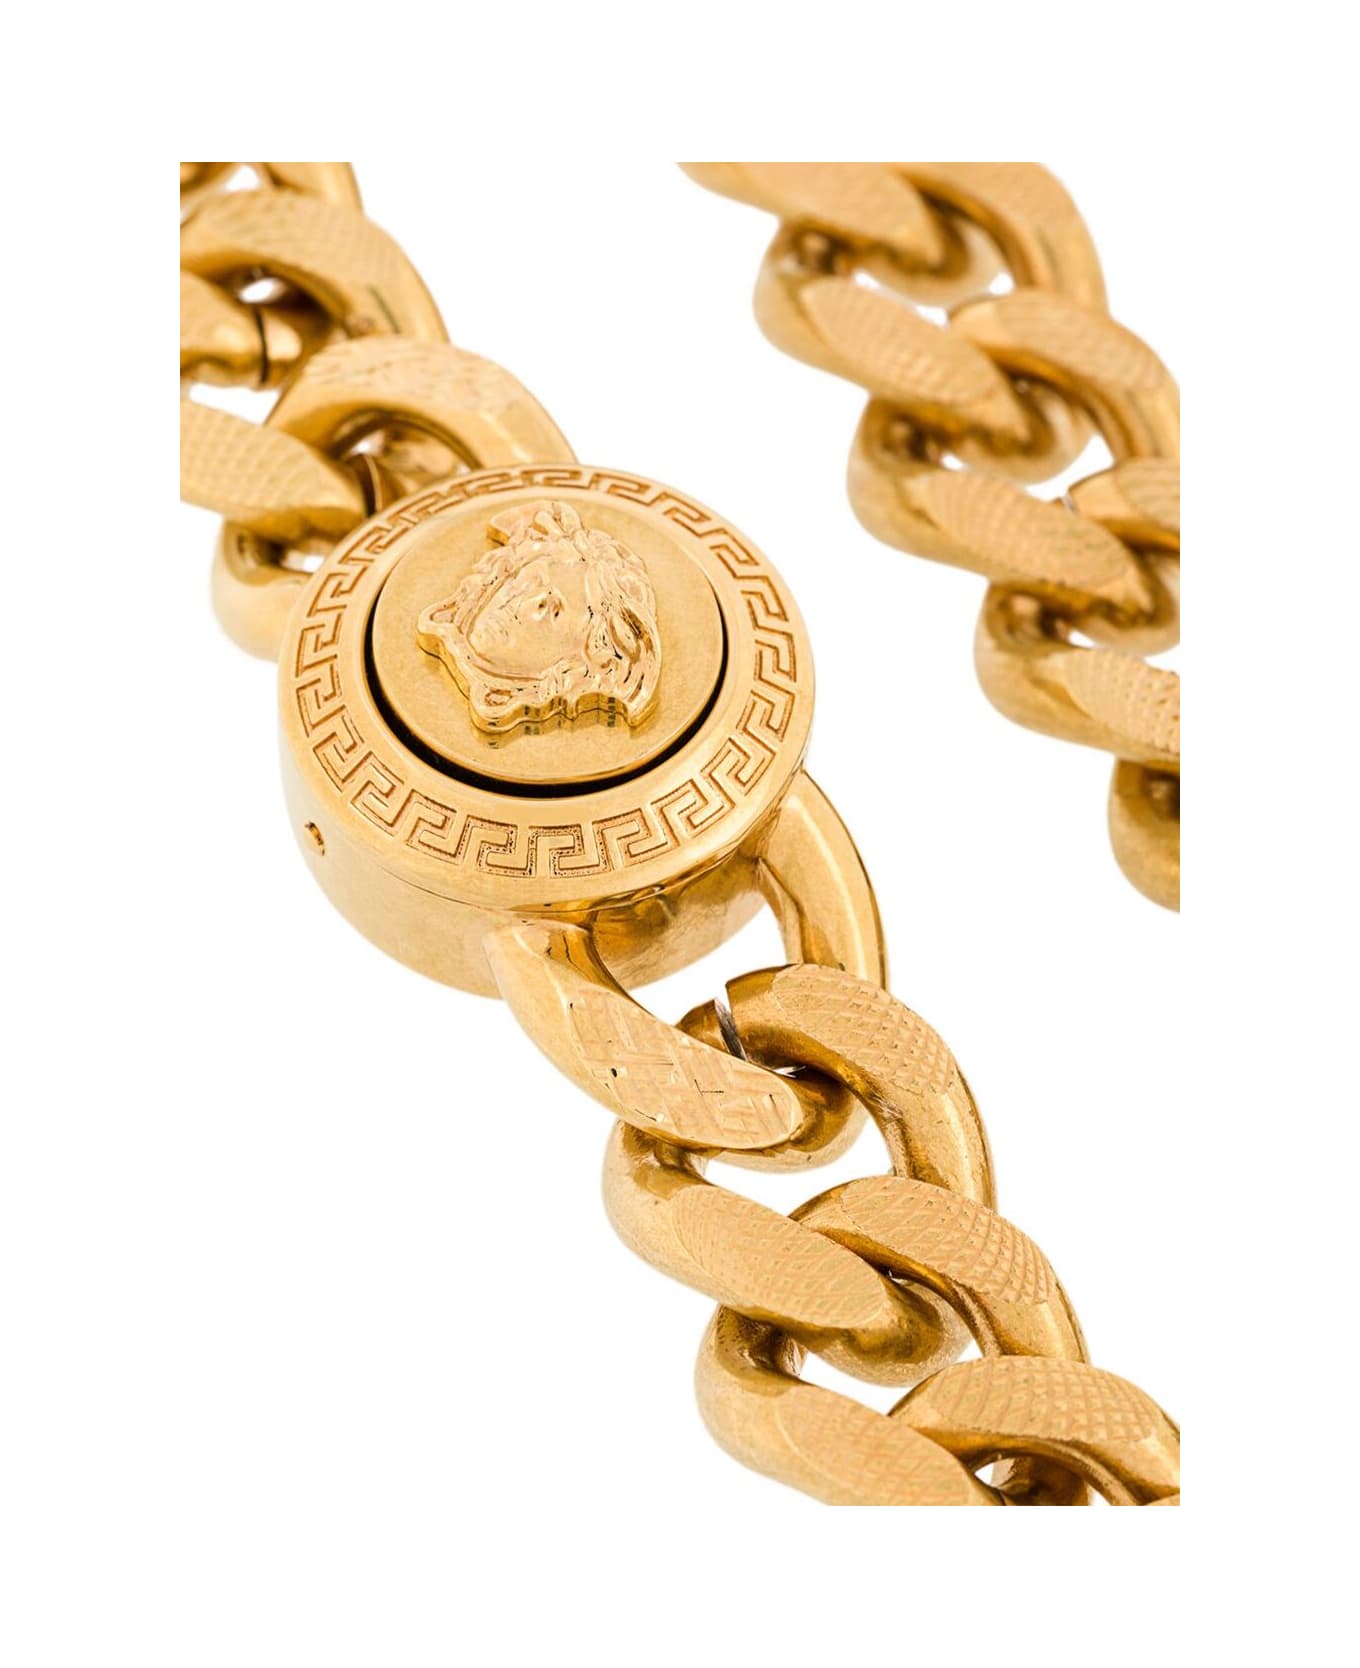 Versace Man's Golden Metal Chain Bracelet With Logo - Metallic